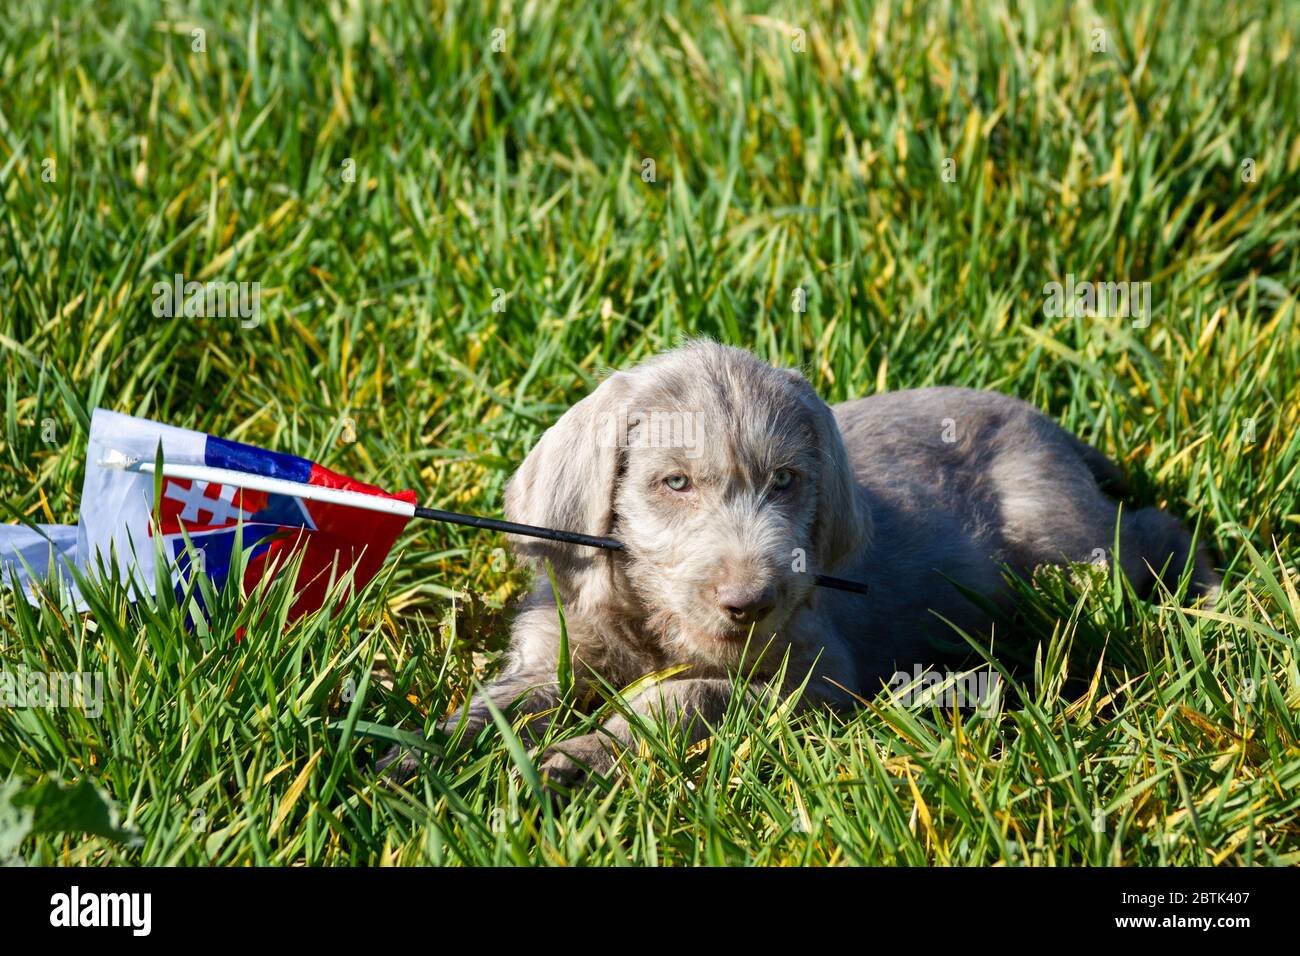 Cuccioli dai capelli grigi nell'erba che regge la bandiera slovacca. I cuccioli sono di razza: Slovacco puntino dai capelli ruvidi. Foto Stock